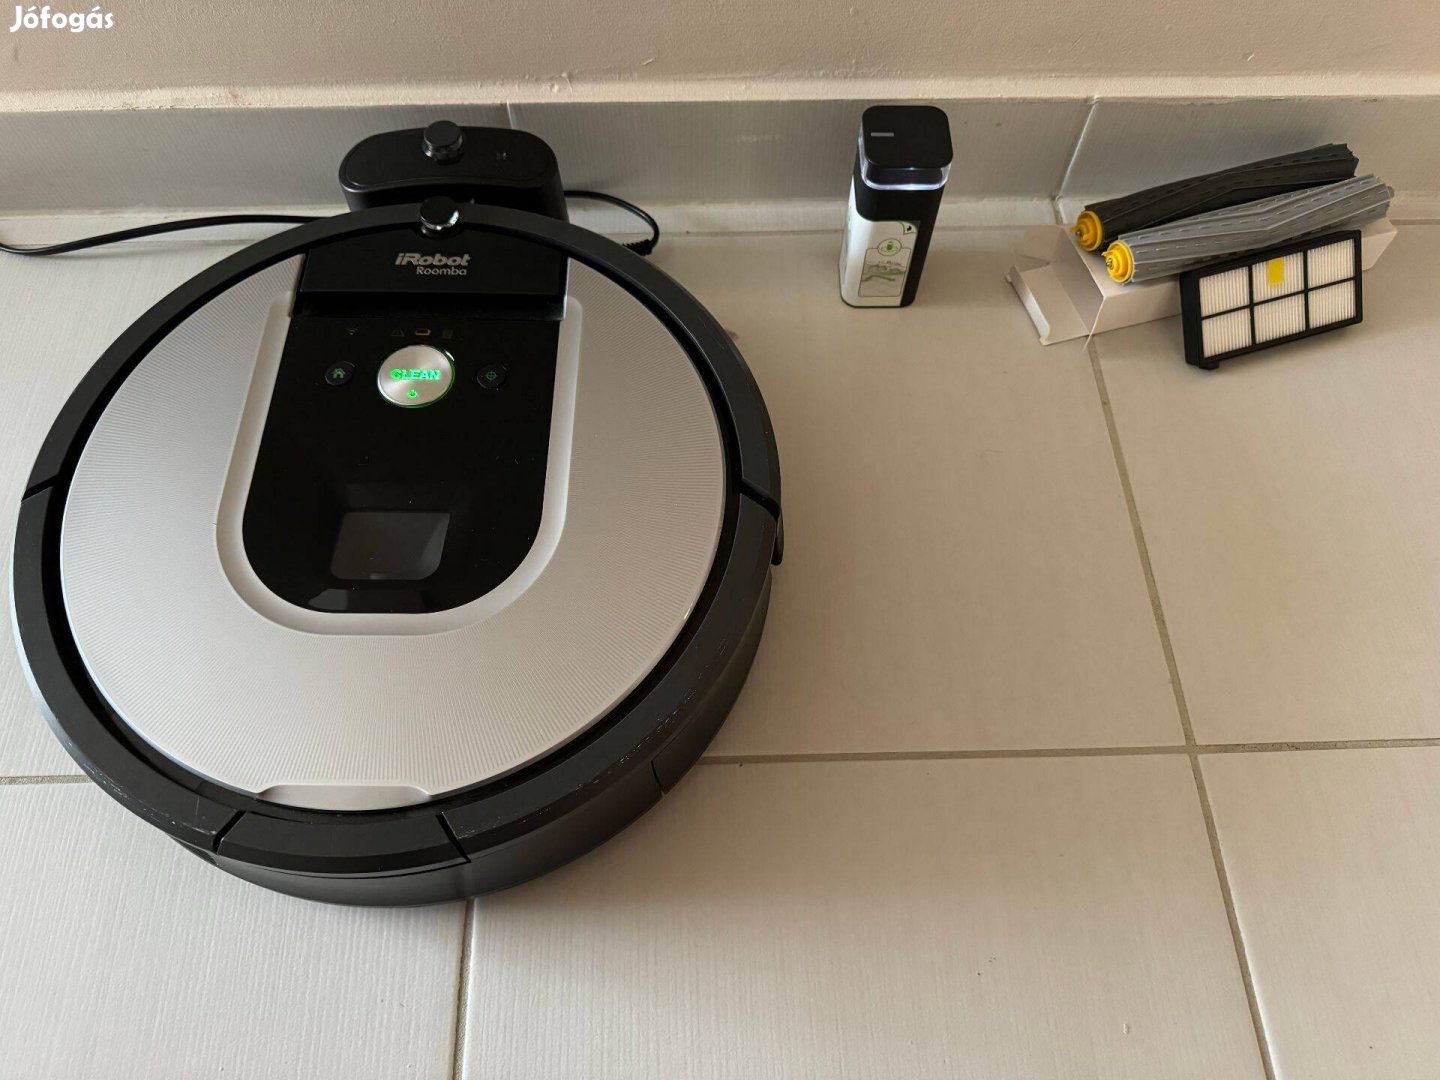 Irobot Roomba 965 robotporszívó (Wifi, infra kapu)